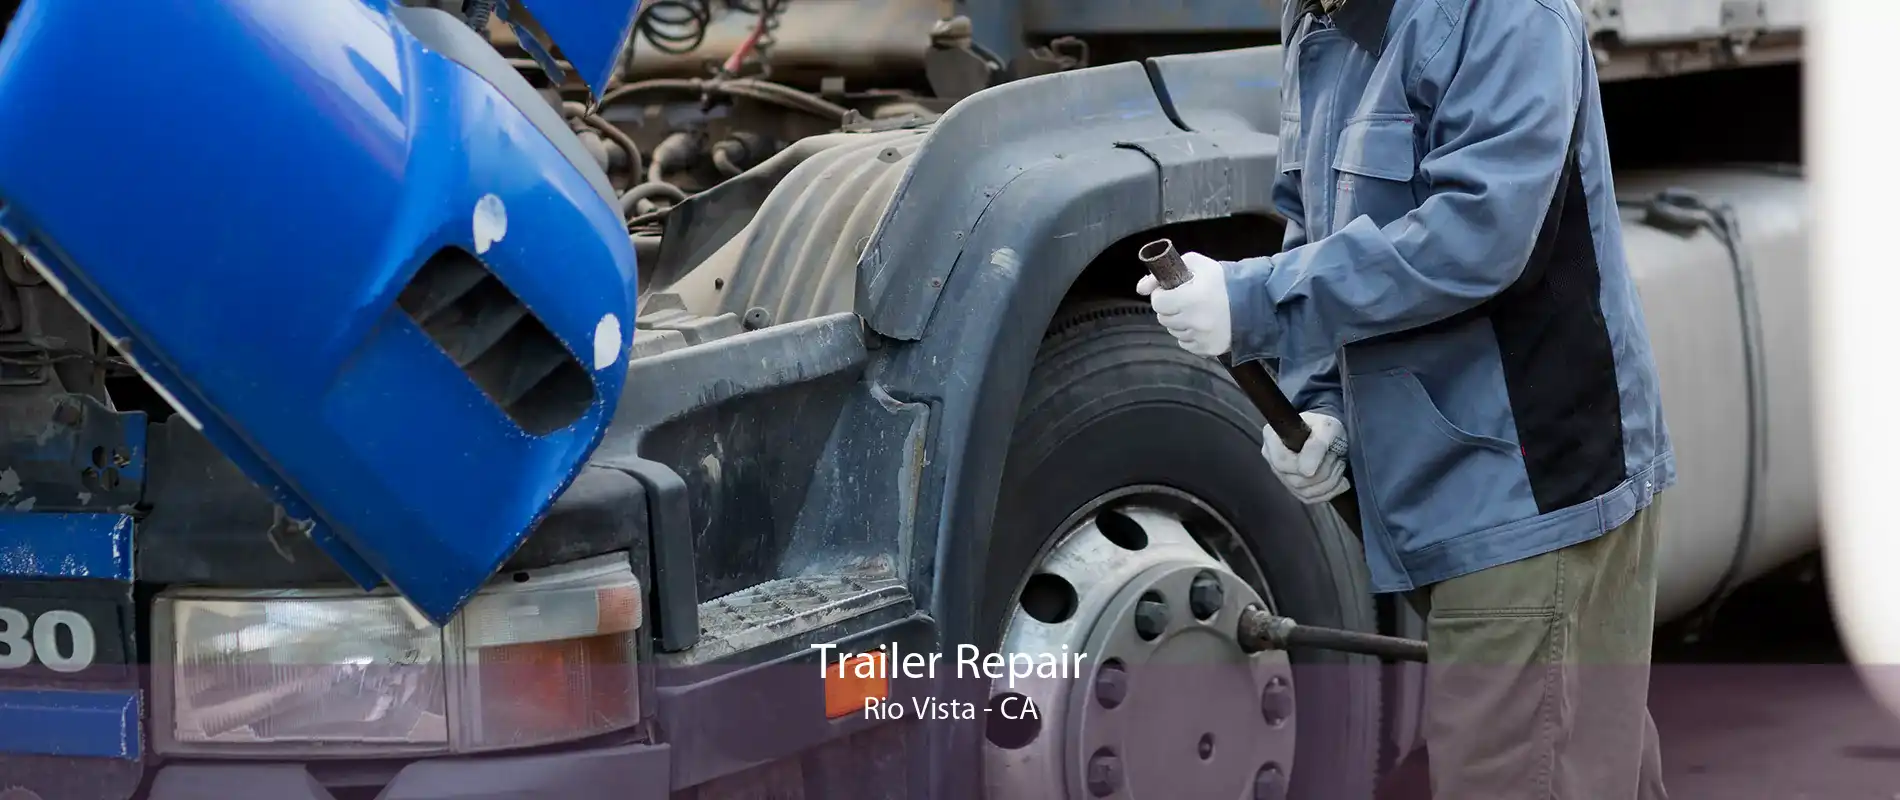 Trailer Repair Rio Vista - CA